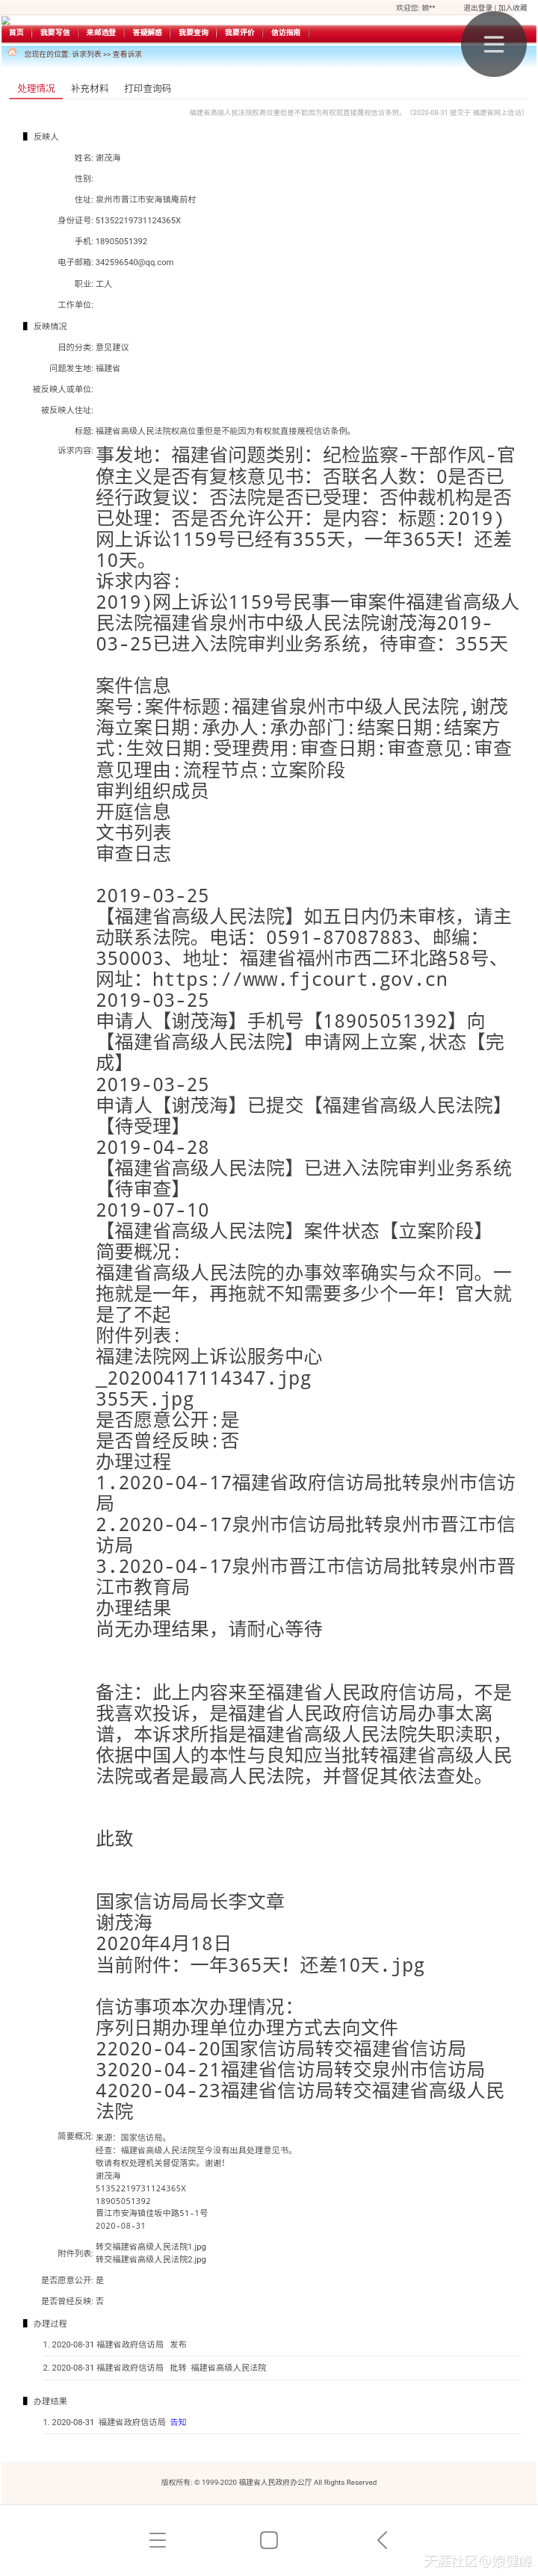 2020年华为手机发布表
:2020-08-31  福建省政府信访局发布